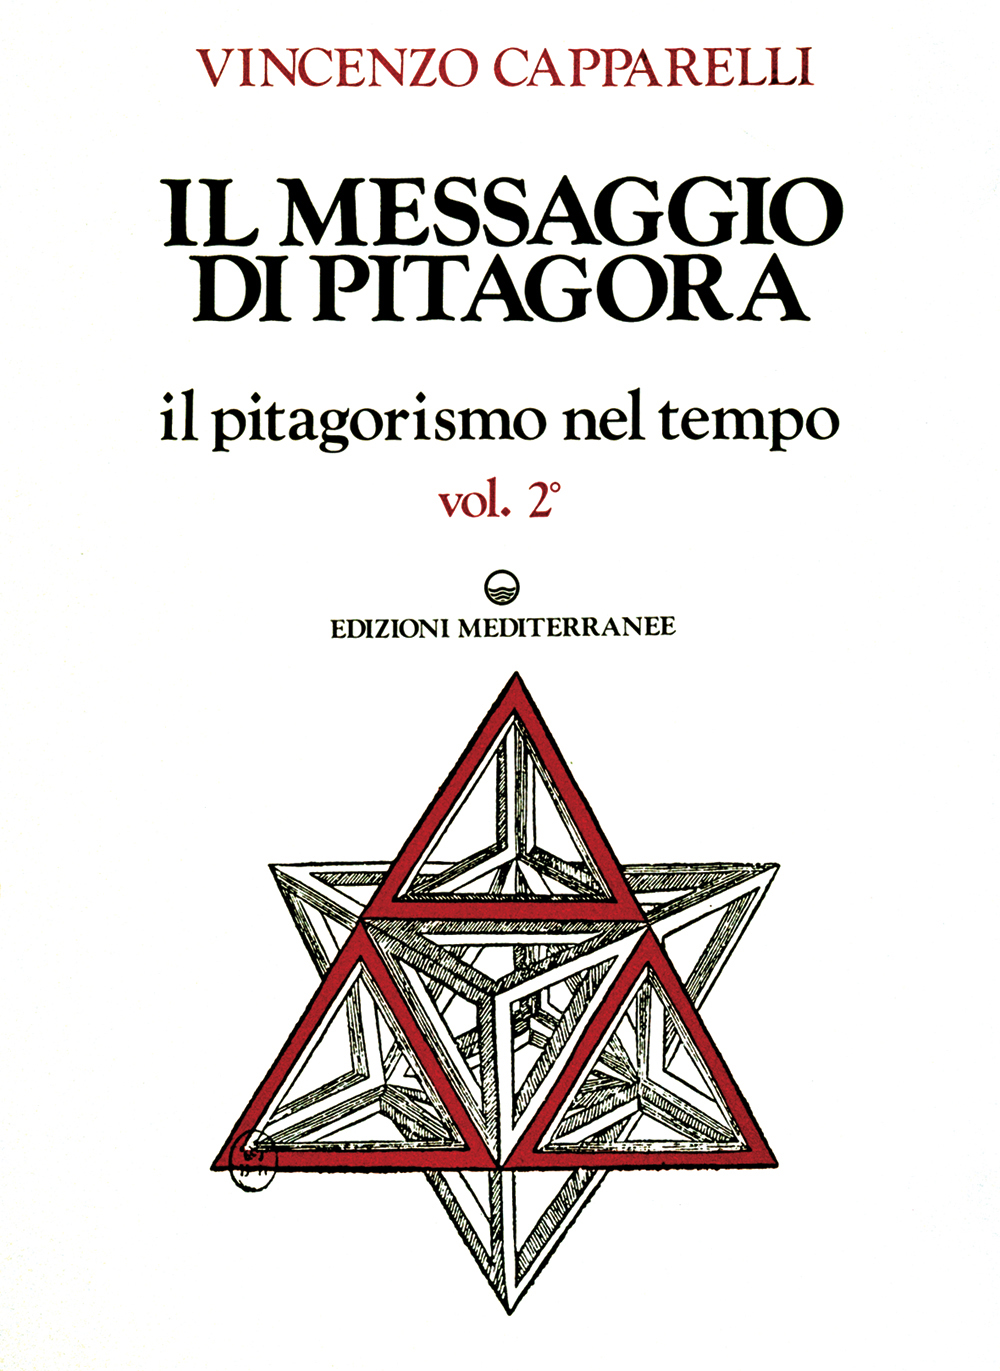 Libri Vincenzo Capparelli - Il Messaggio Di Pitagora NUOVO SIGILLATO, EDIZIONE DEL 01/07/1990 SUBITO DISPONIBILE